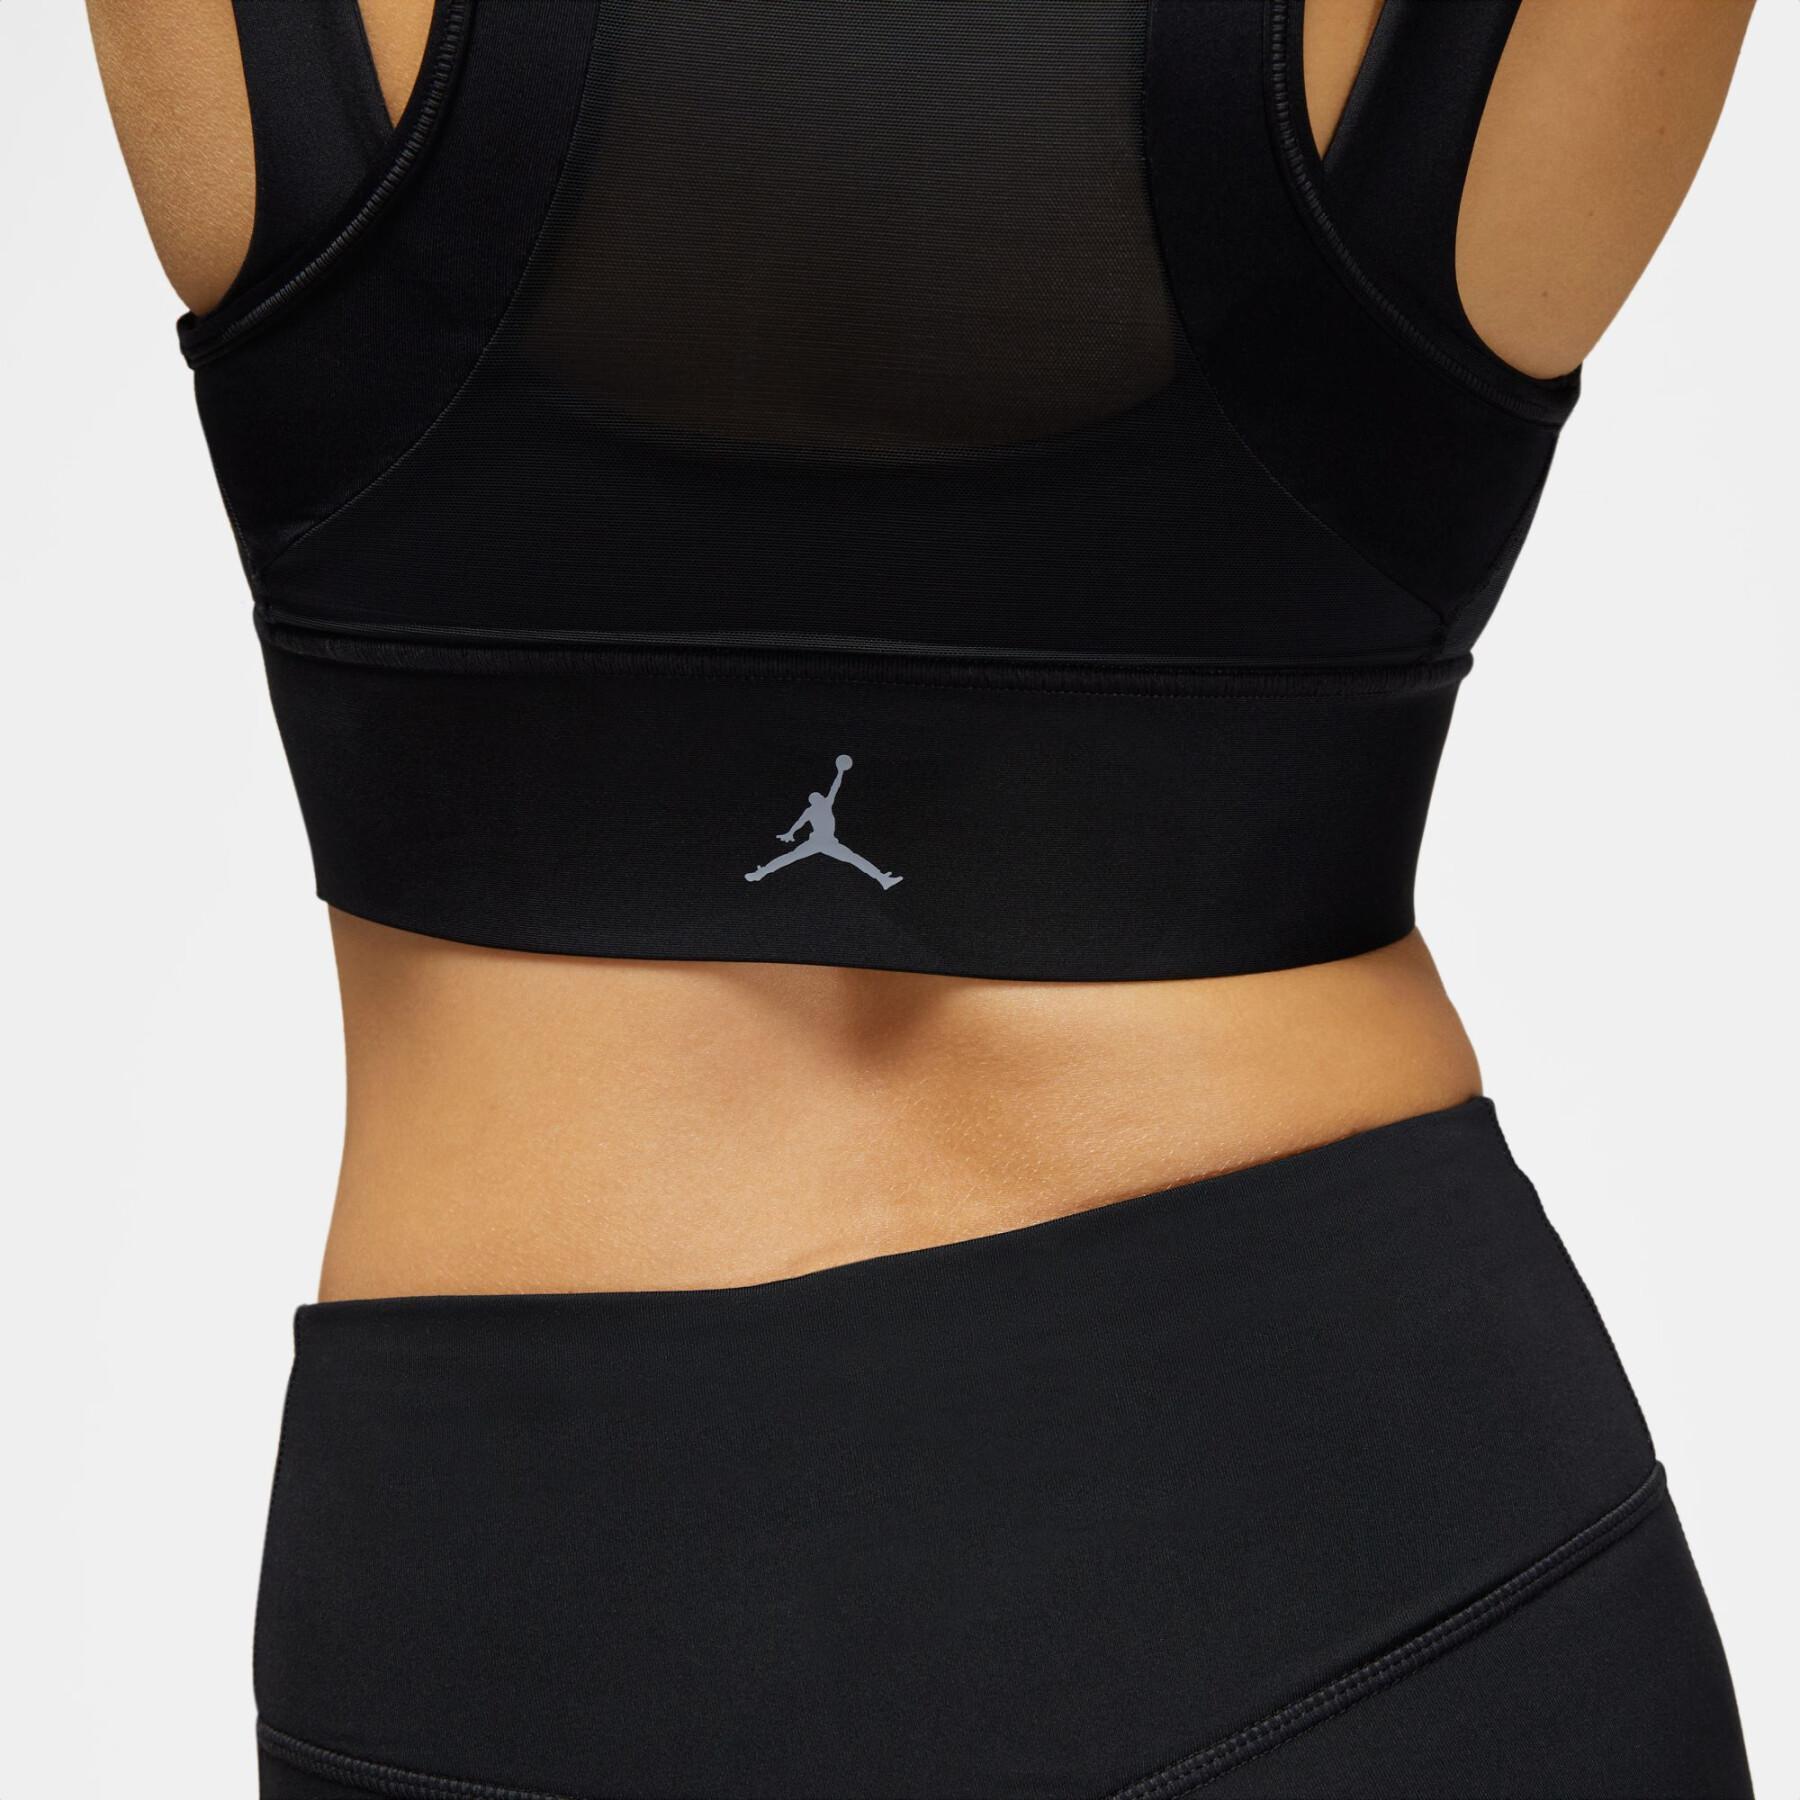 Women's bra Nike Layered